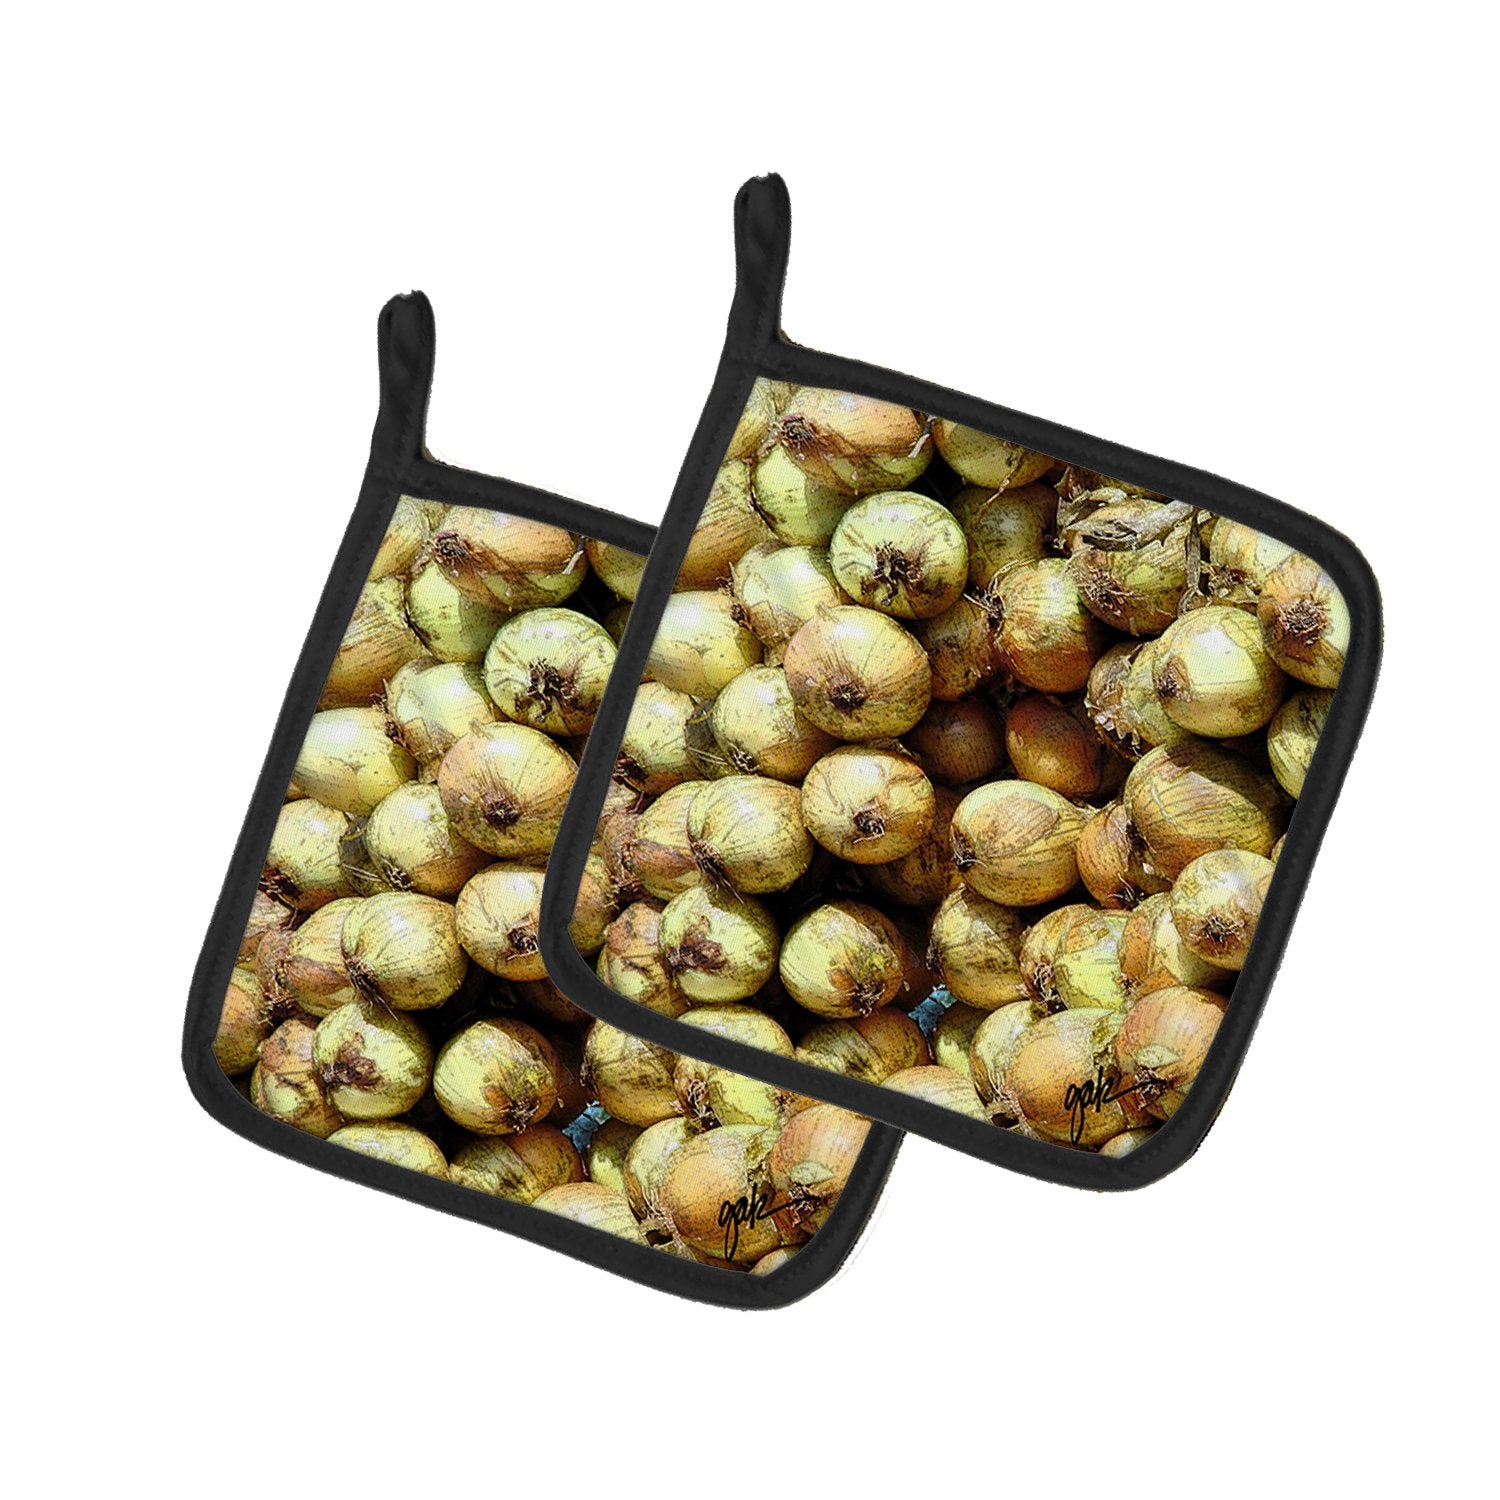 Buy this Onions by Gary Kwiatek Pair of Pot Holders